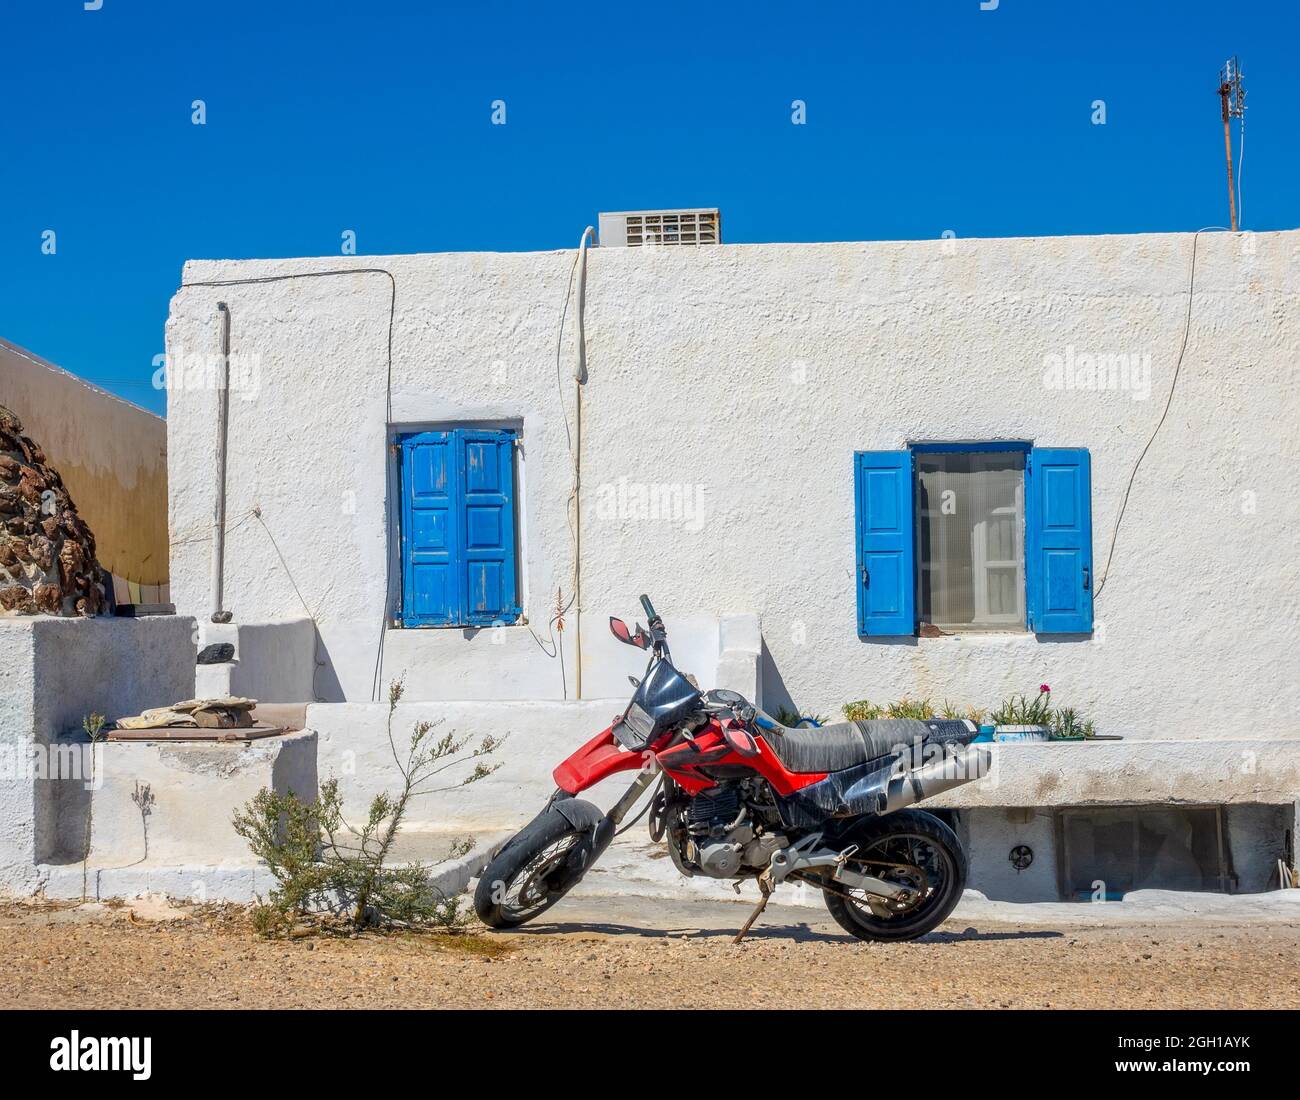 Grecia. Oia ciudad en la isla de Santorini. Moto roja en frente de la casa. Foto de stock